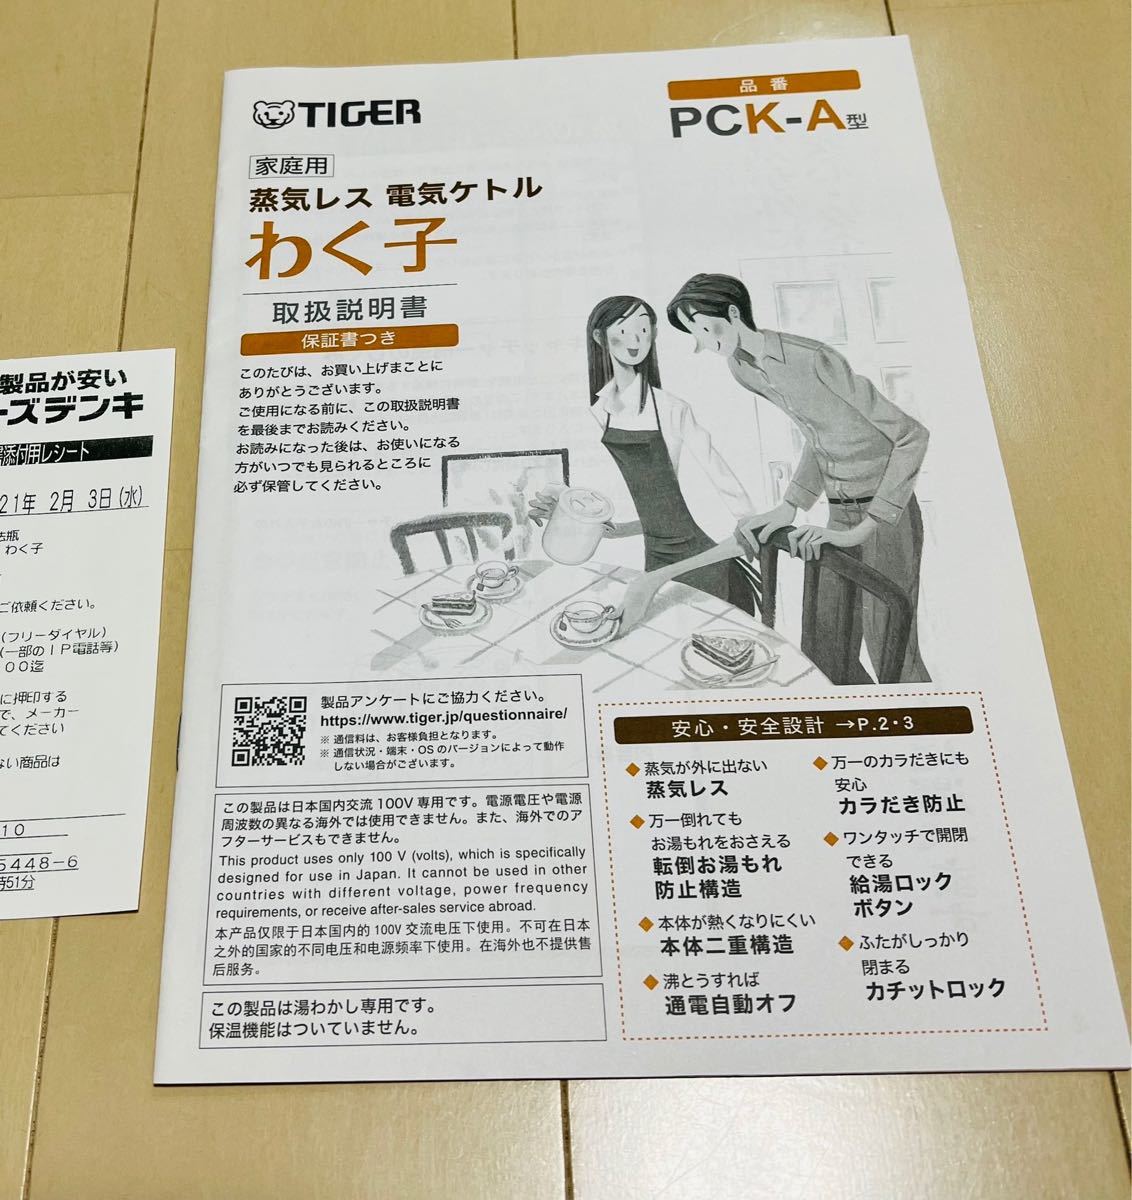 タイガー魔法瓶 TIGER 蒸気レス電気ケトル PCK-A080 WM マットホワイト